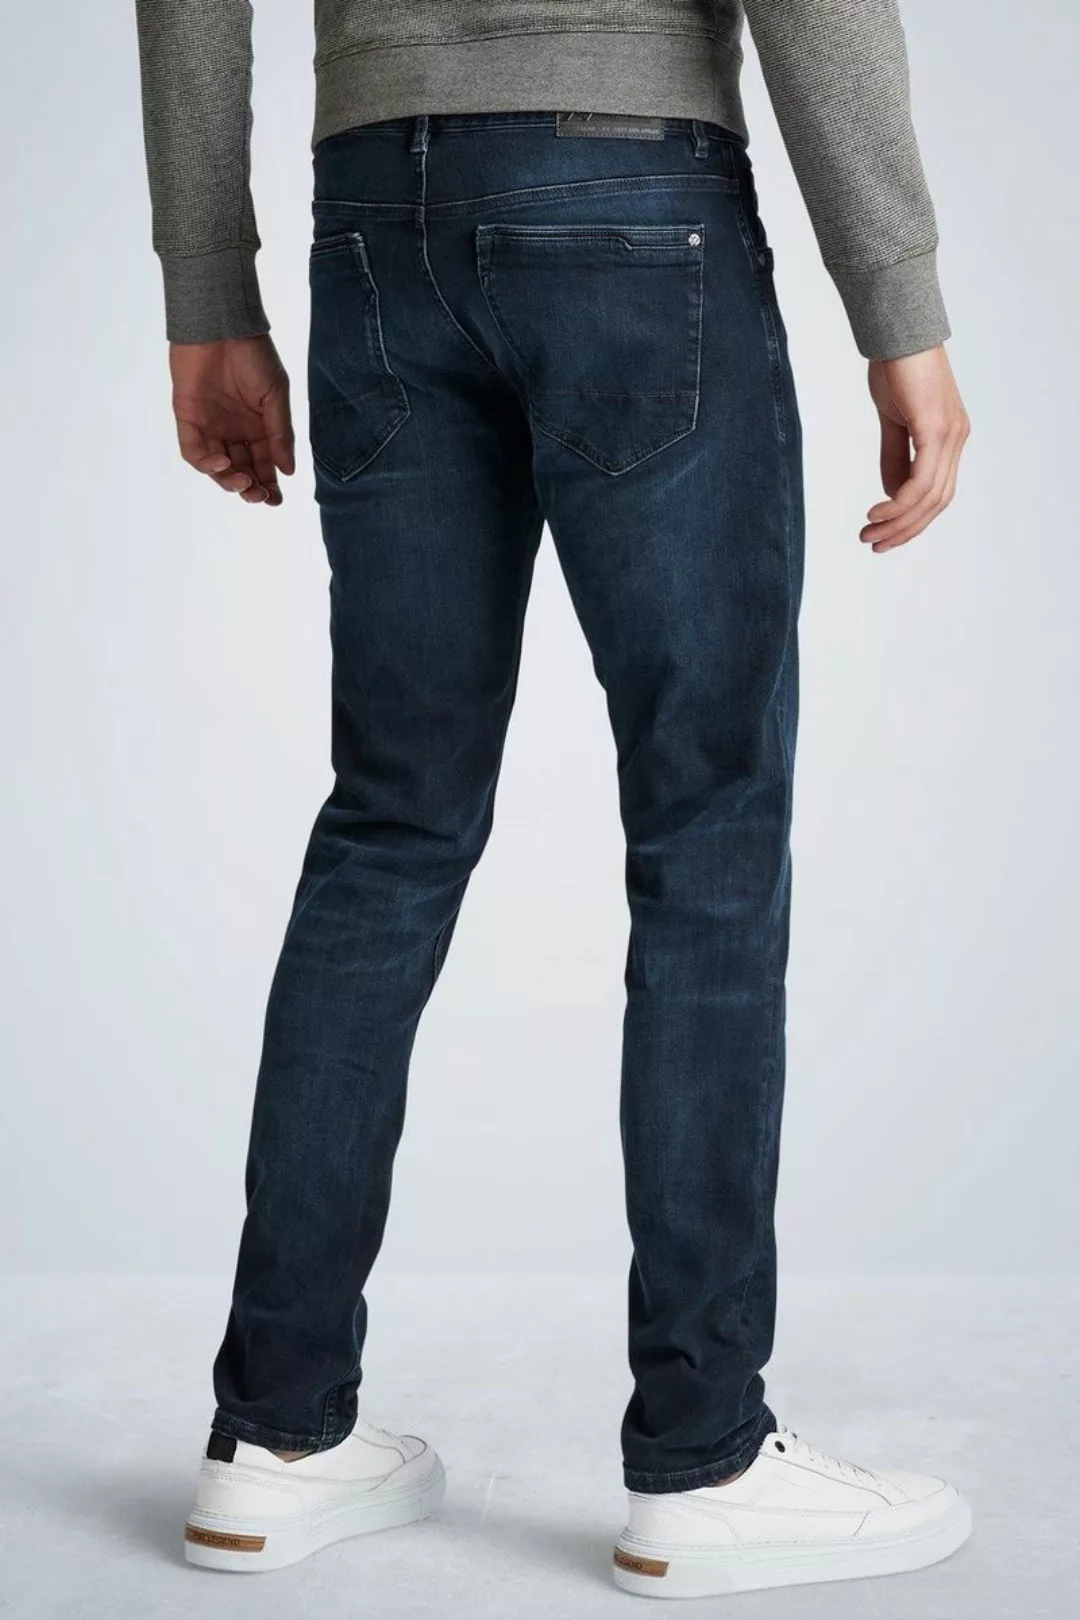 PME Legend XV Jeans Blue Black PTR150 - Größe W 33 - L 30 günstig online kaufen